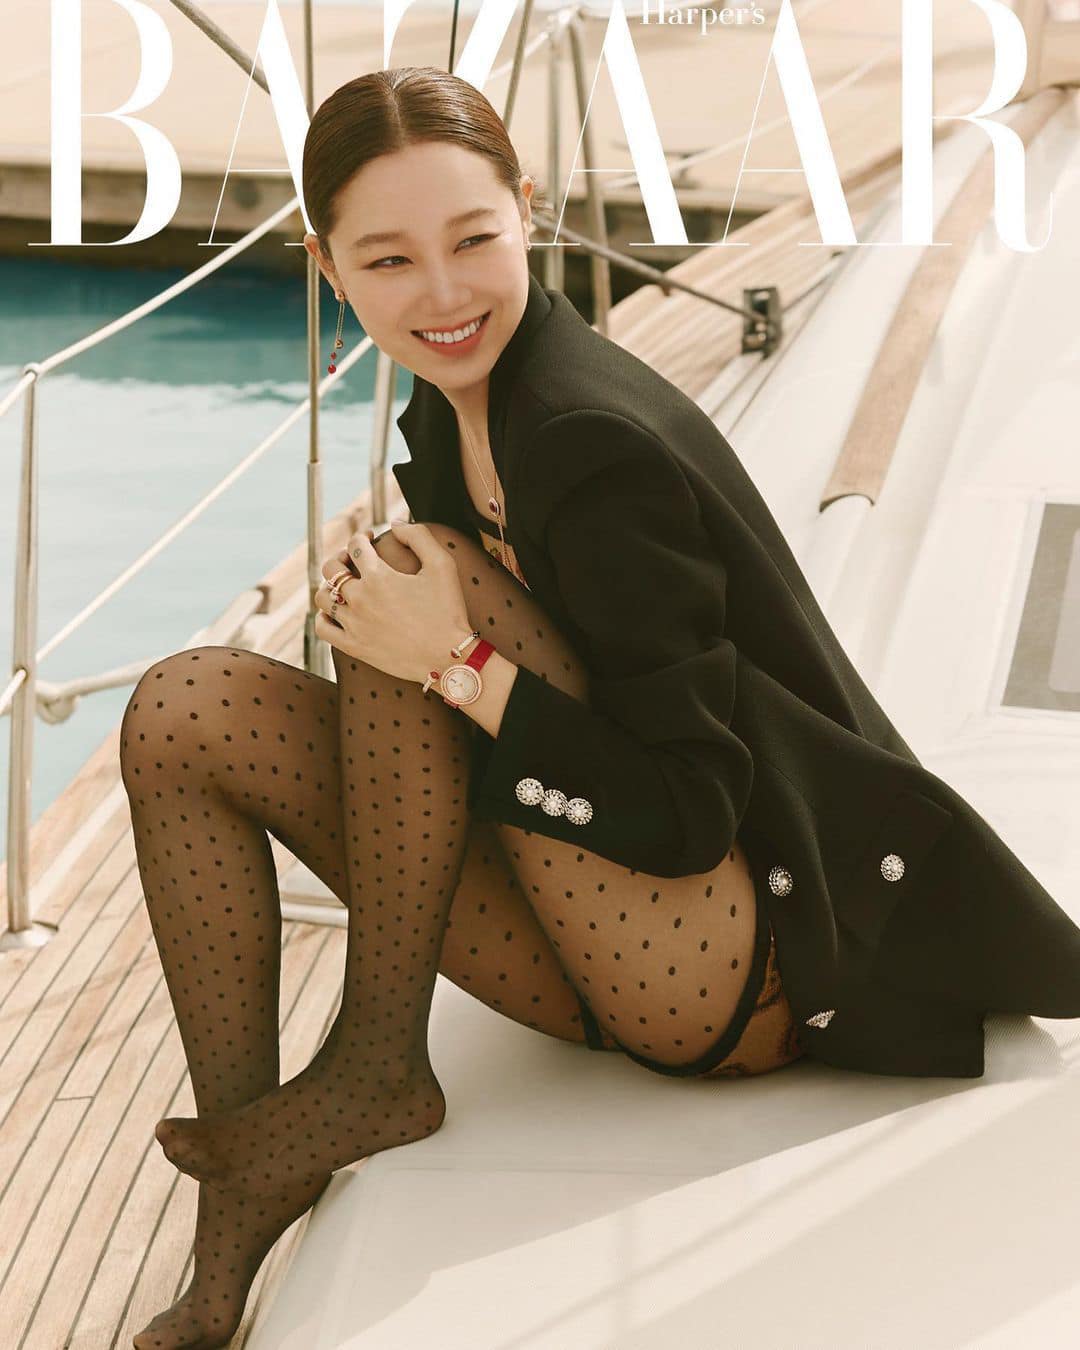 'Chị đại' Gong Hyo Jin khỏe vẻ đẹp không tuổi trên bìa Harper's Bazaar số tháng 6.